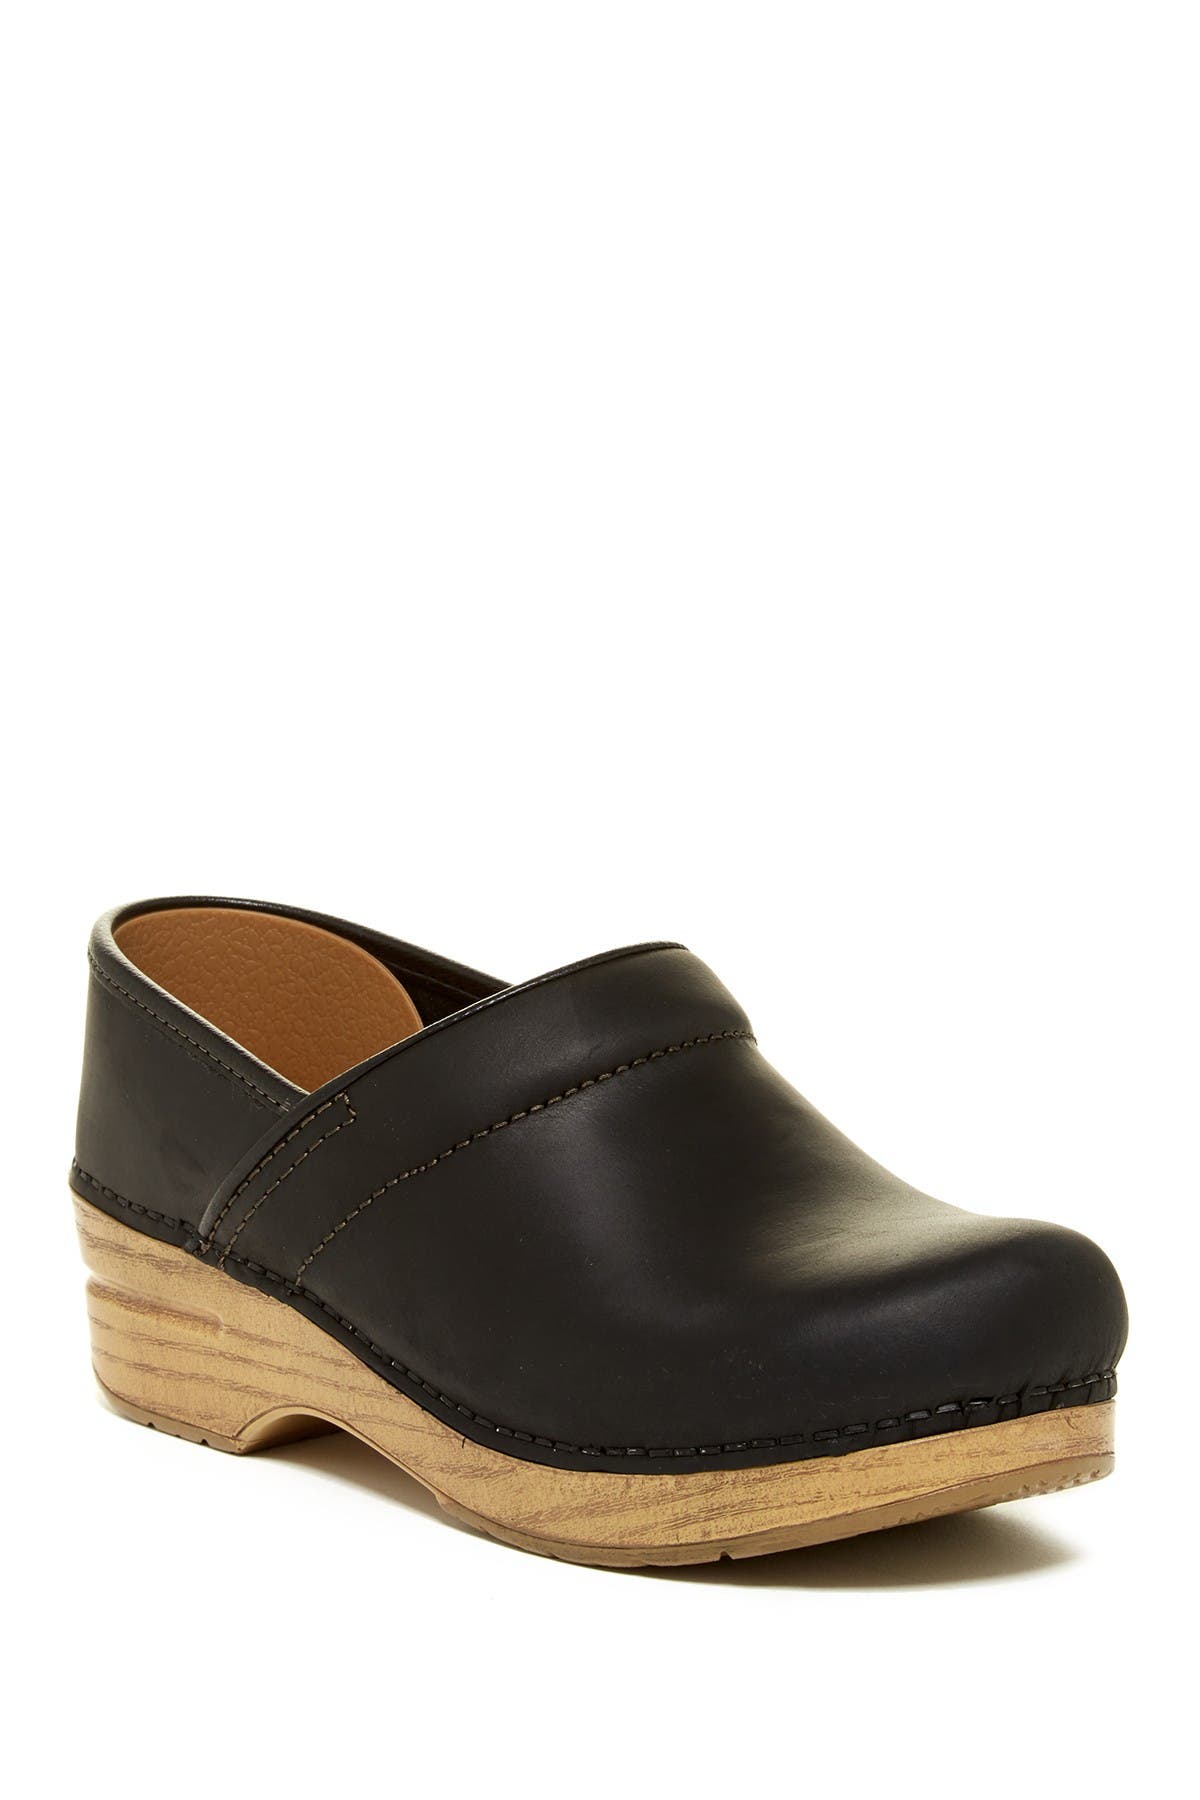 dansko wooden heel